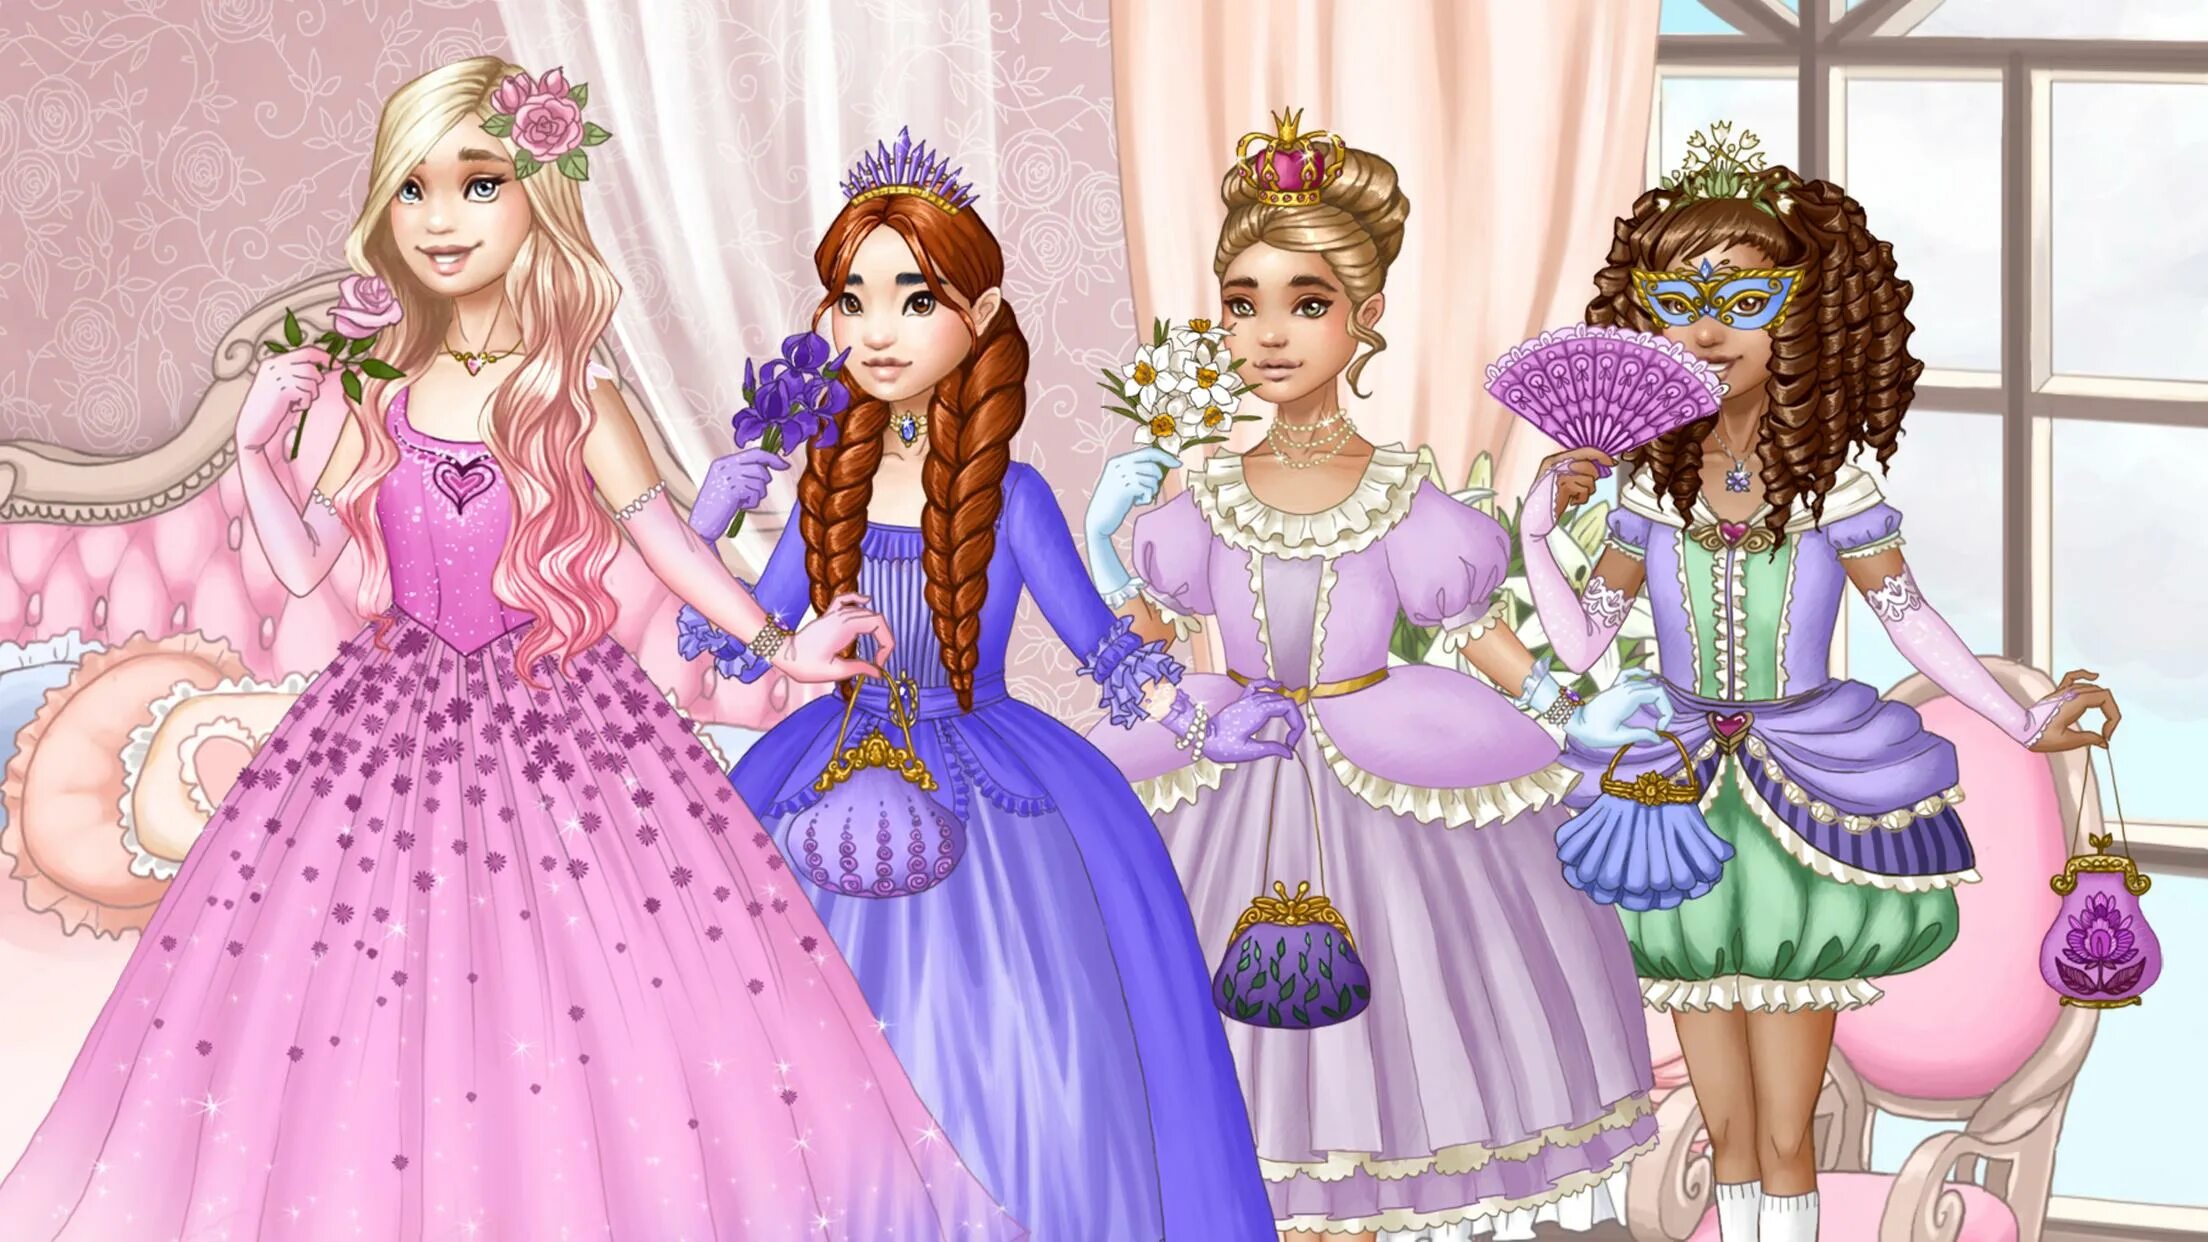 Бесплатные игры одевалки дисней принцесс. Принцессе одеважки. Принцессы одевалки. Одевалки для девочек принцессы. Игра одевалки принцесс.